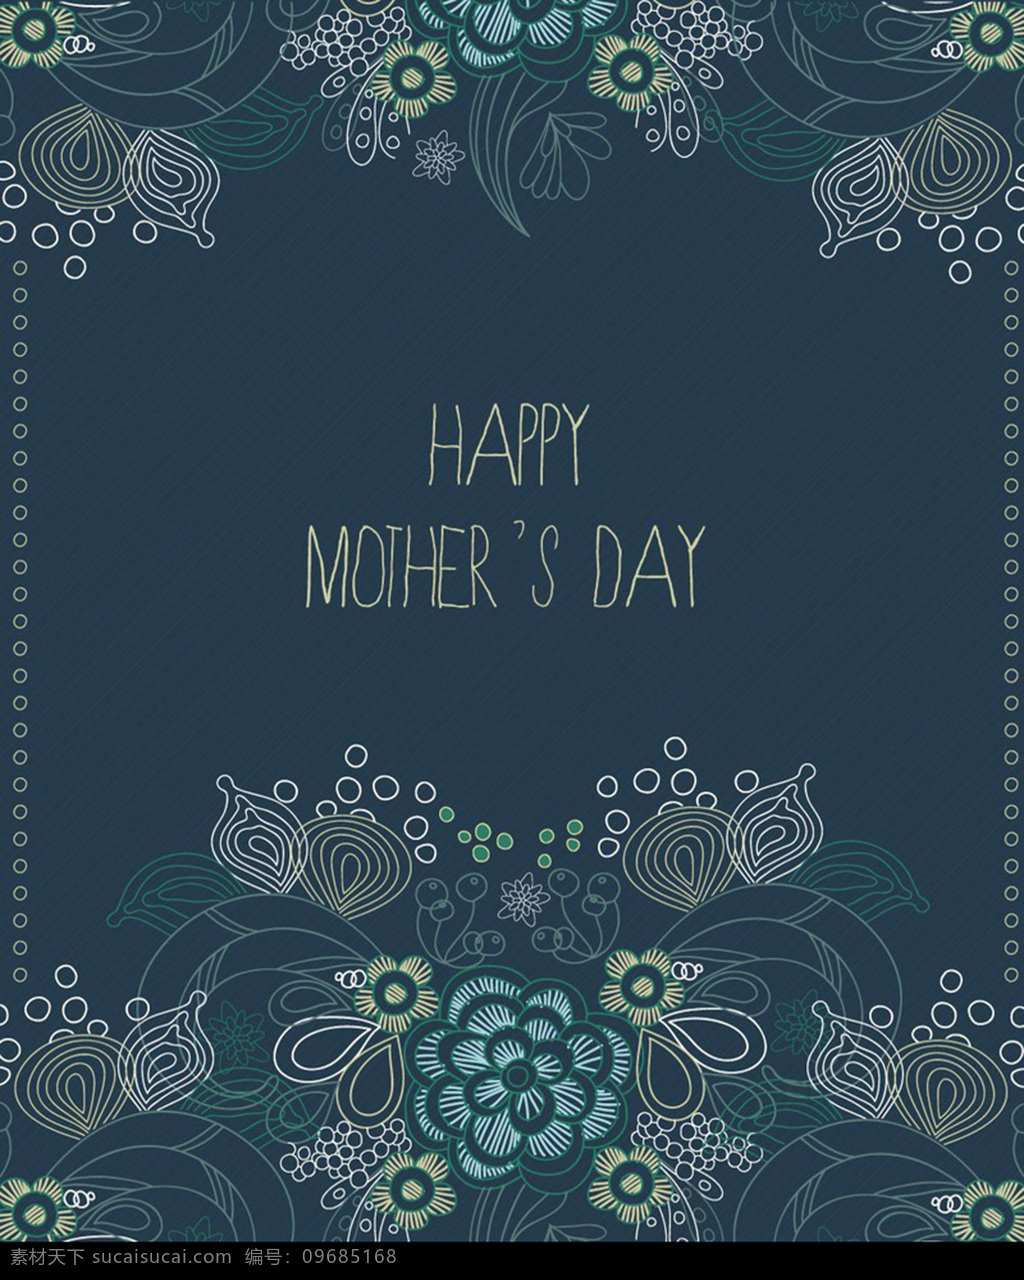 蓝色 花纹 背景 边框 母亲节 卡片 母亲节素材 感恩母亲节 唯美 母亲节海报